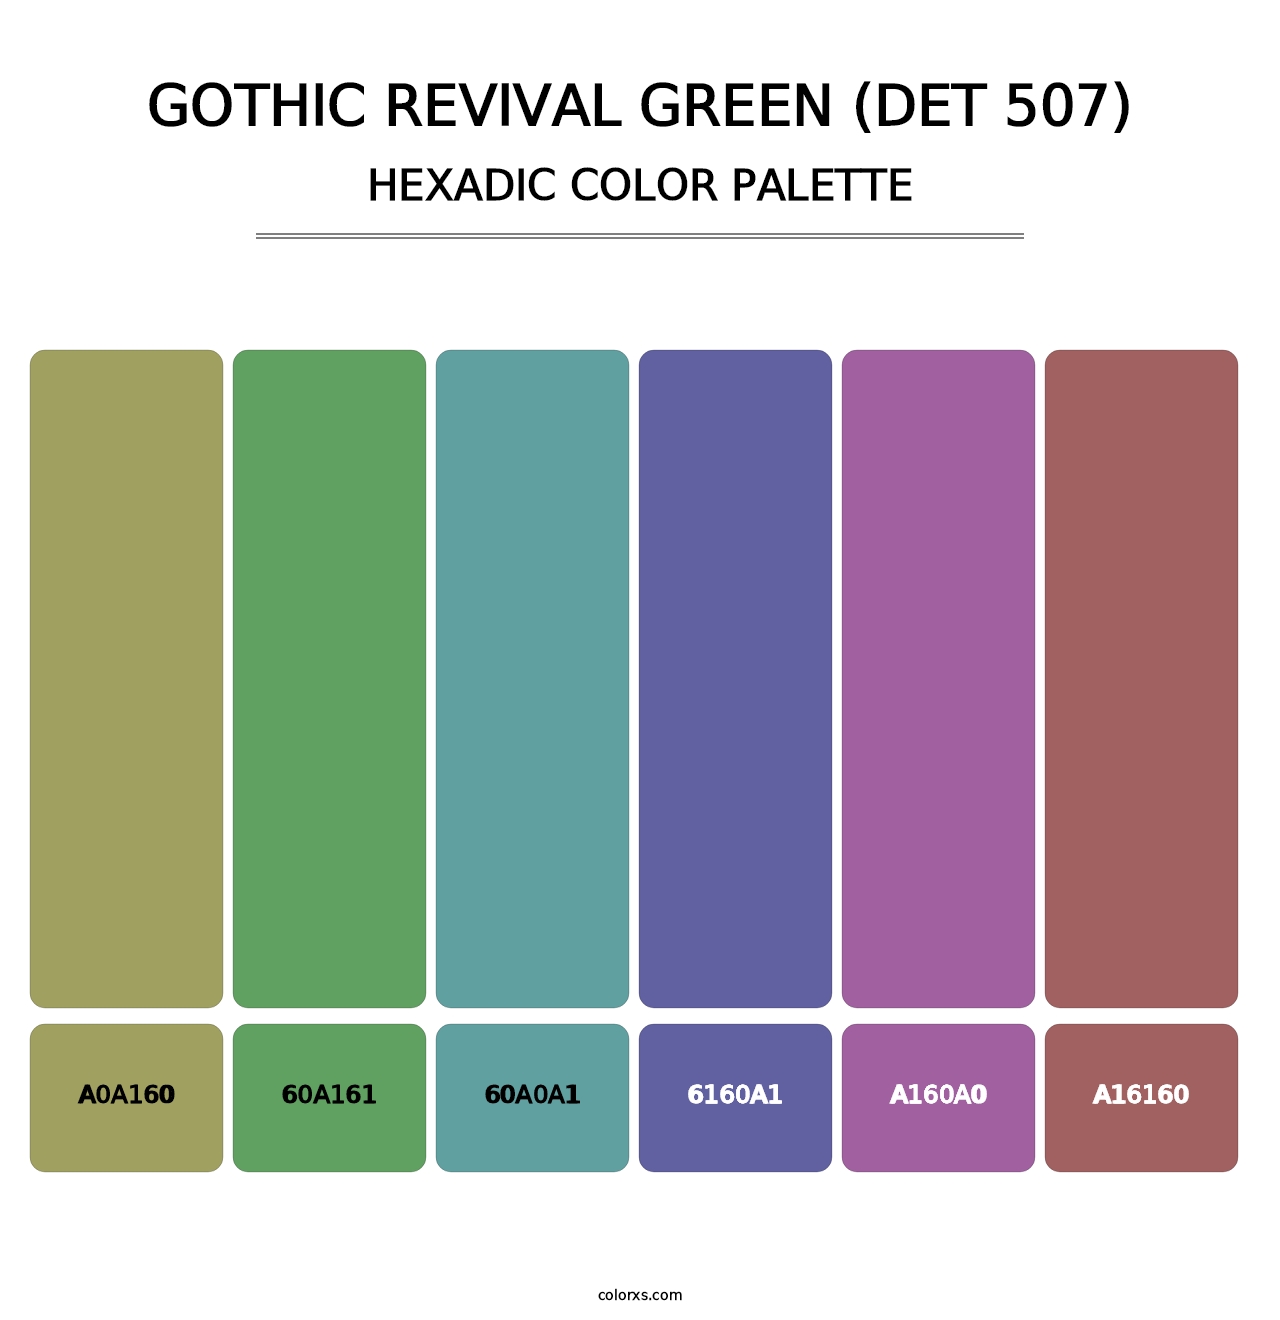 Gothic Revival Green (DET 507) - Hexadic Color Palette